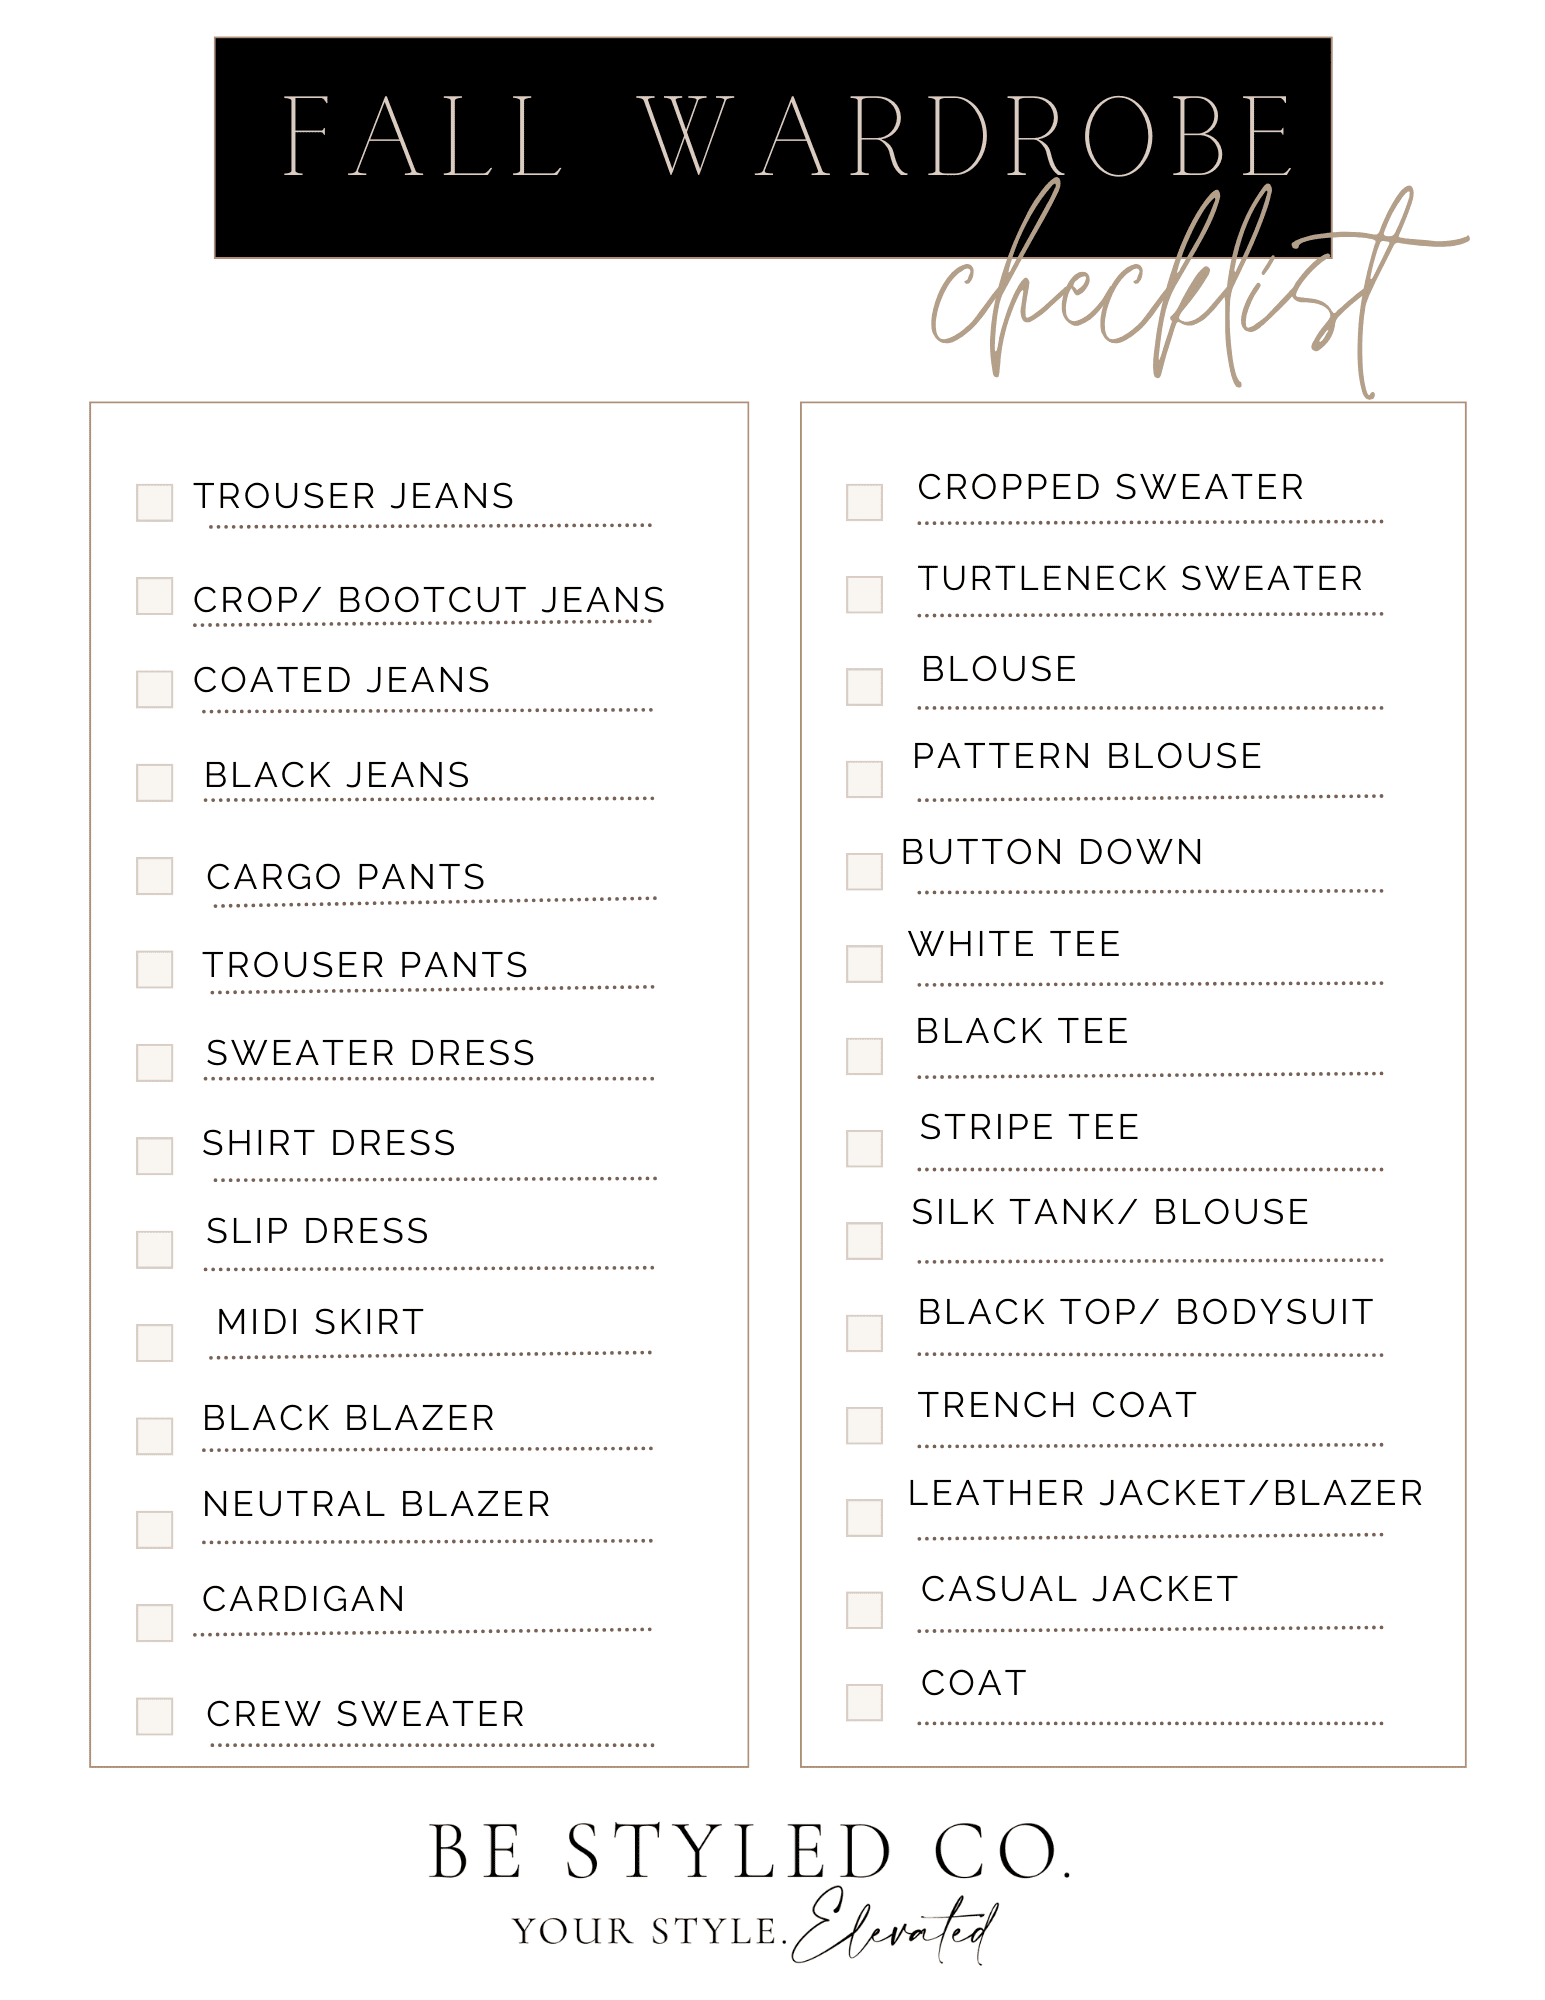 wardrobe checklist for women